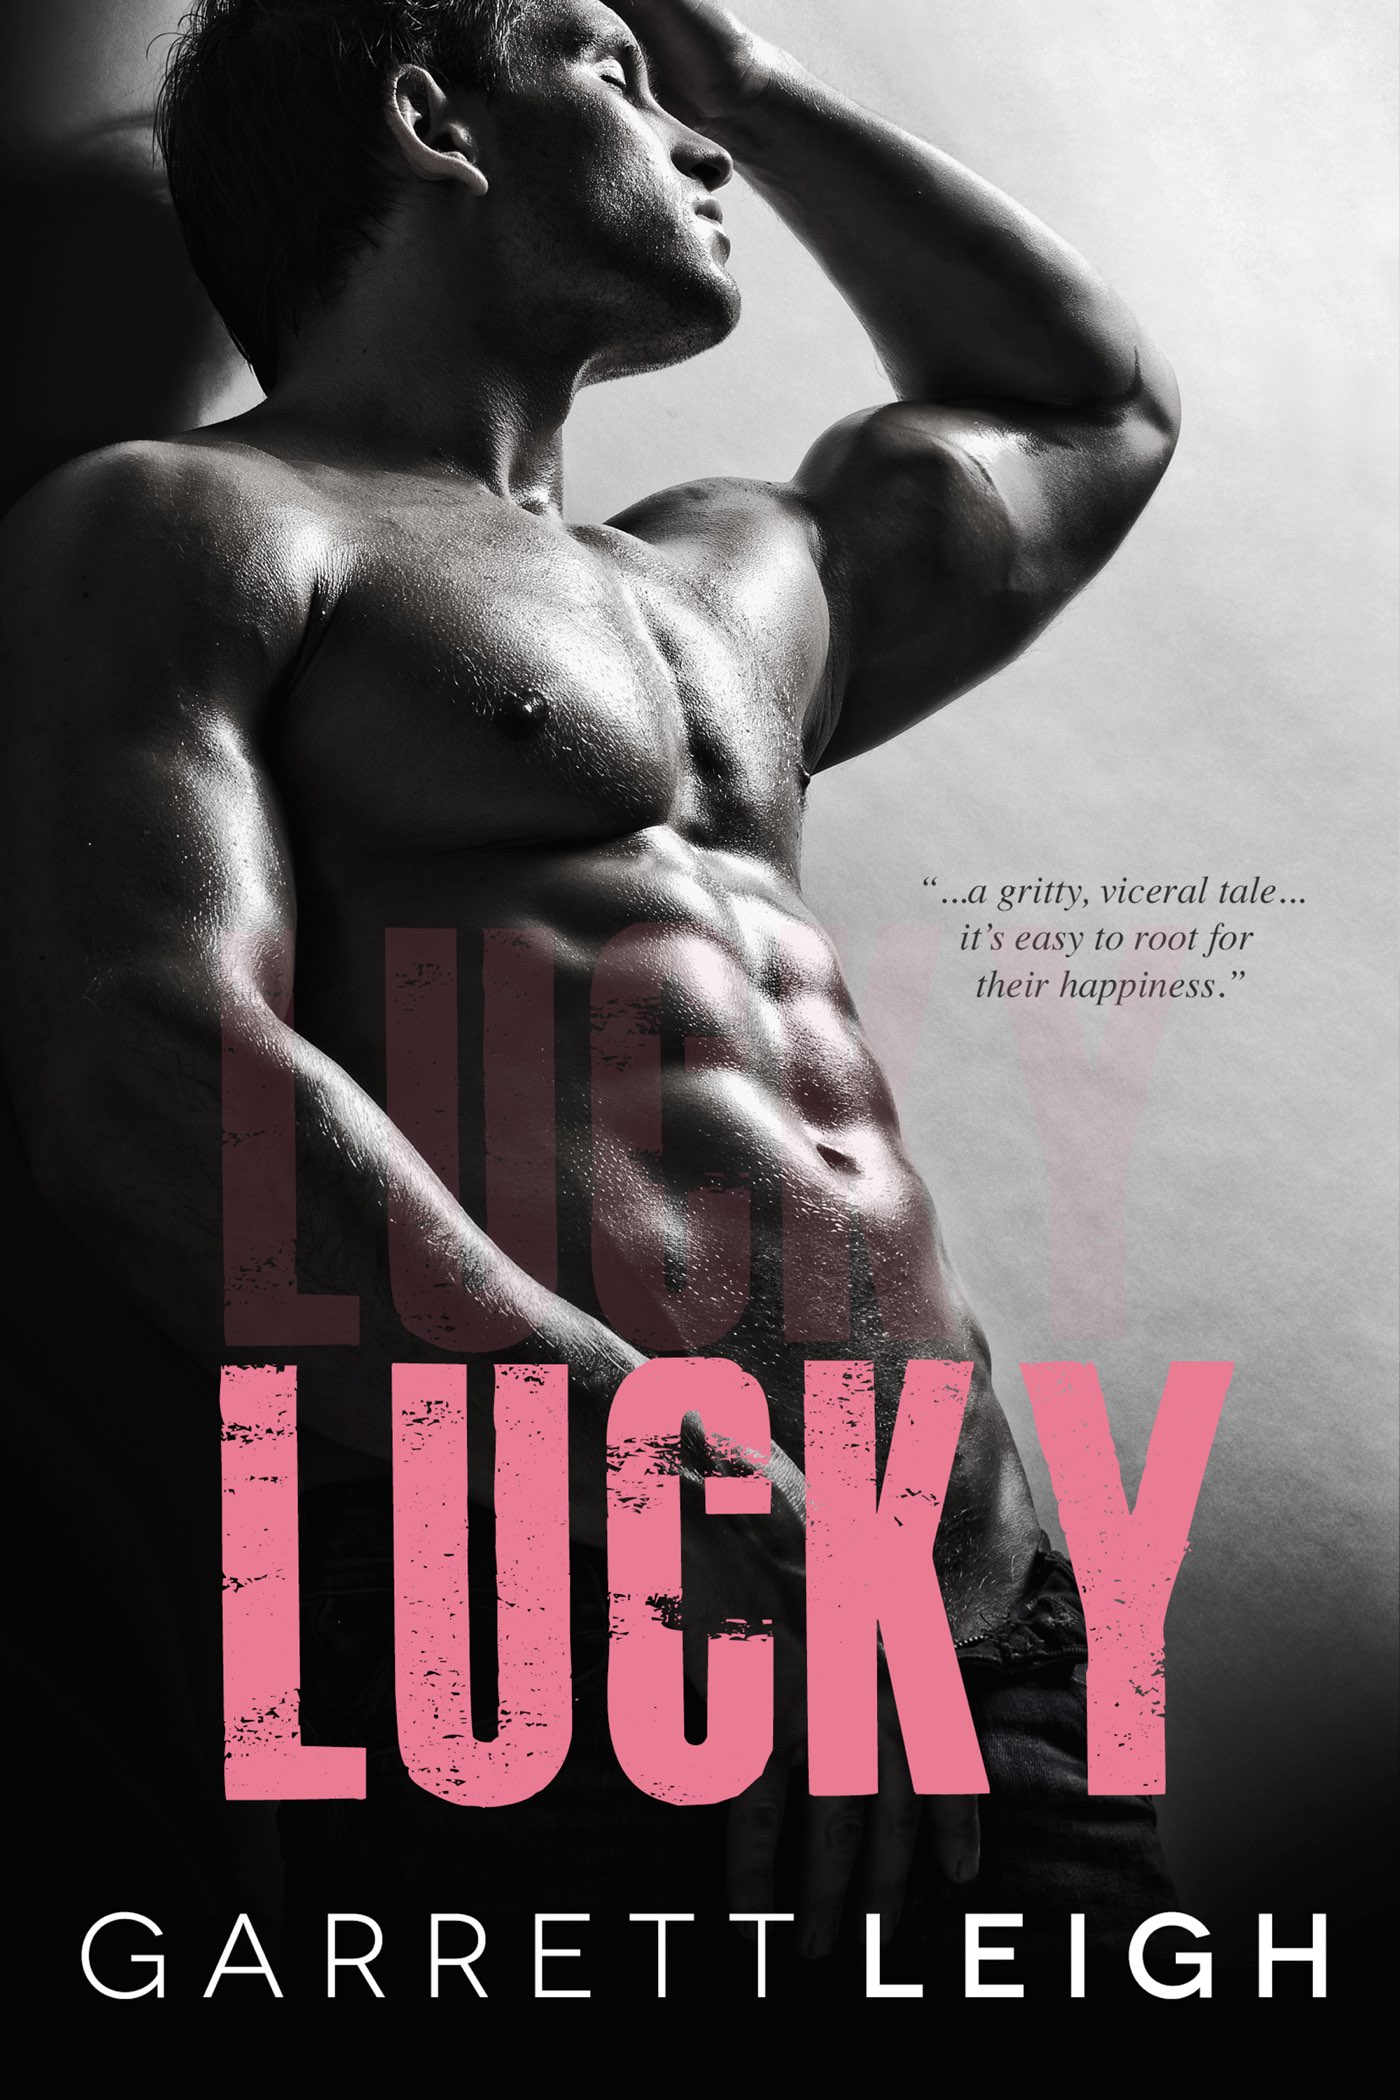 Garrett Leigh, Lucky, RJ Reviews